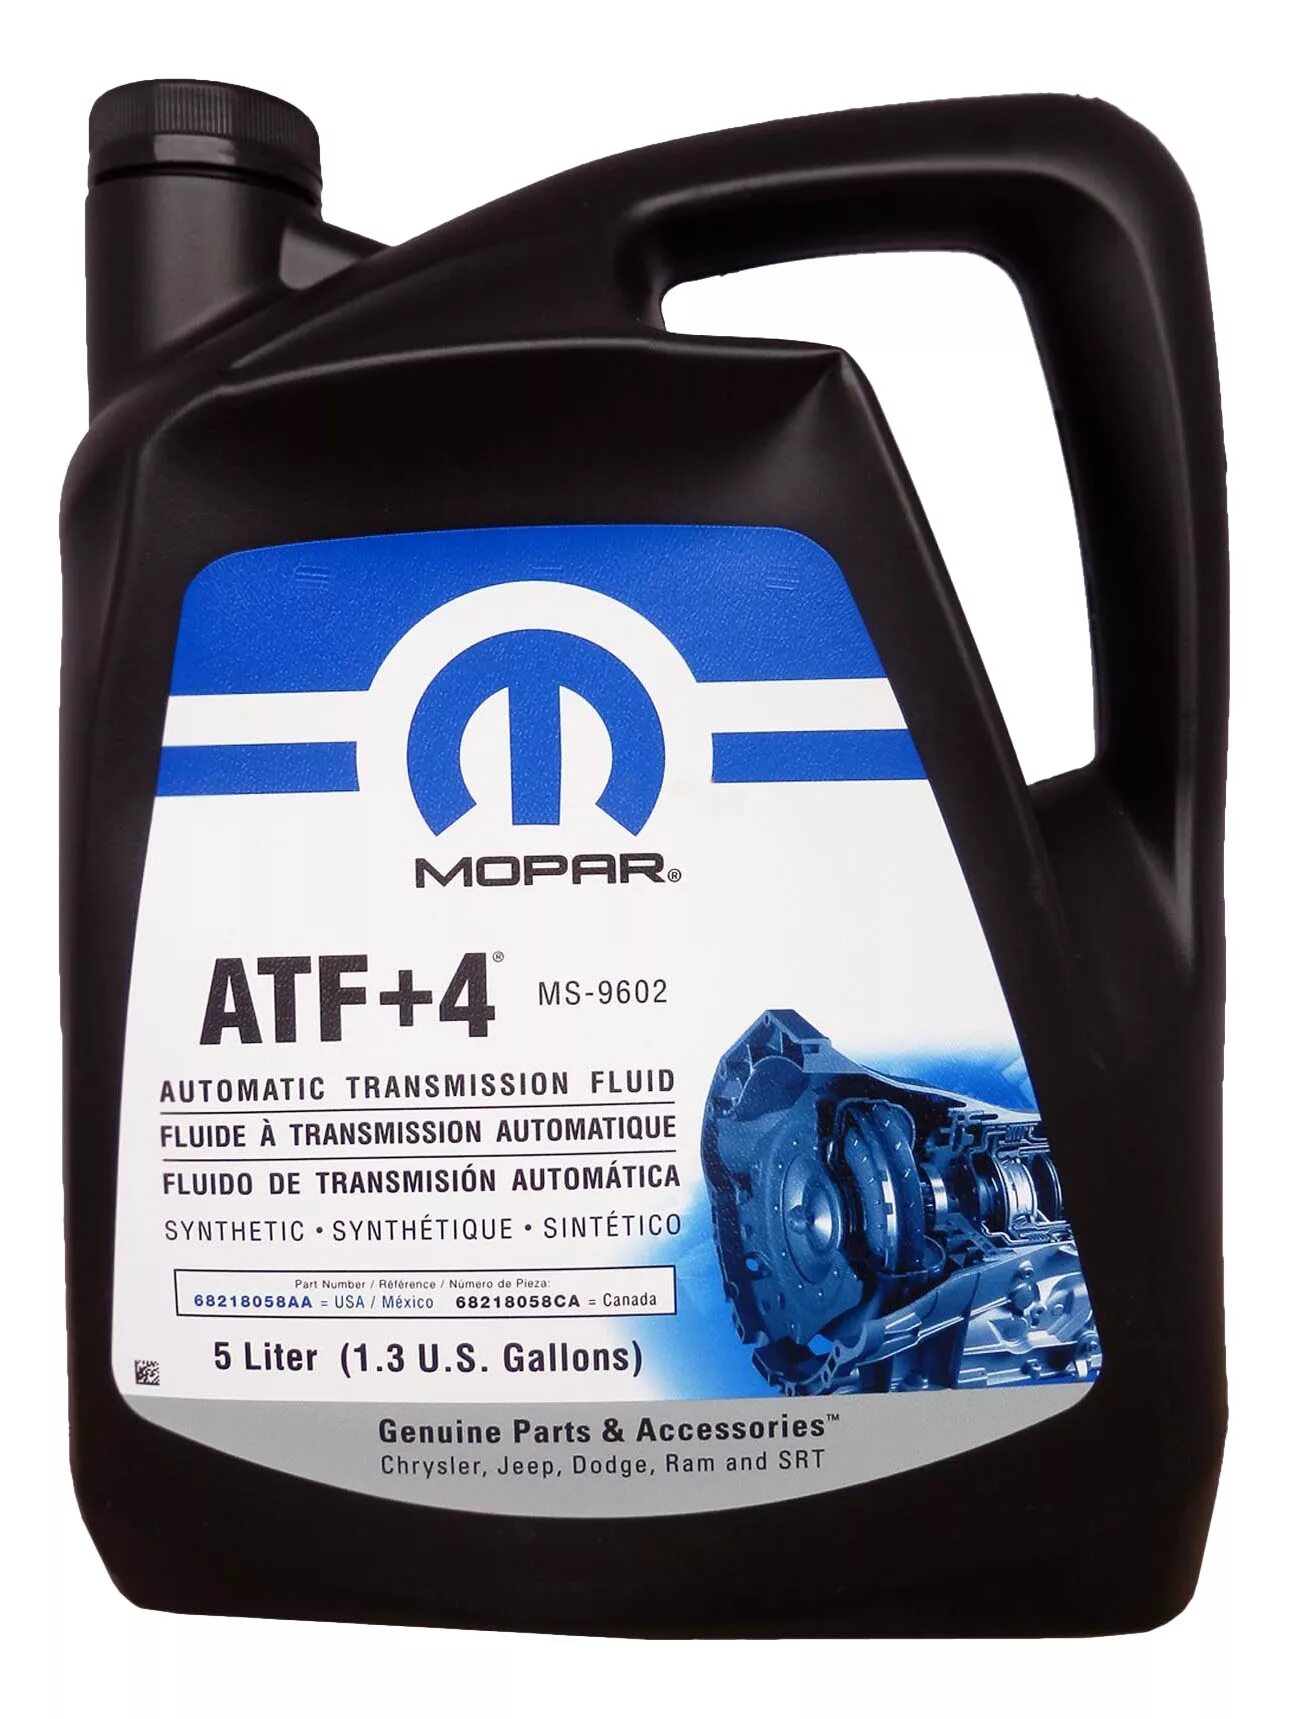 Купить трансмиссионное масло цена. Mopar ATF+4 (MS-9602). Mopar ATF+4 9602 артикул. Масло трансмиссионное мопар АТФ +4. 68218058aa Mopar.